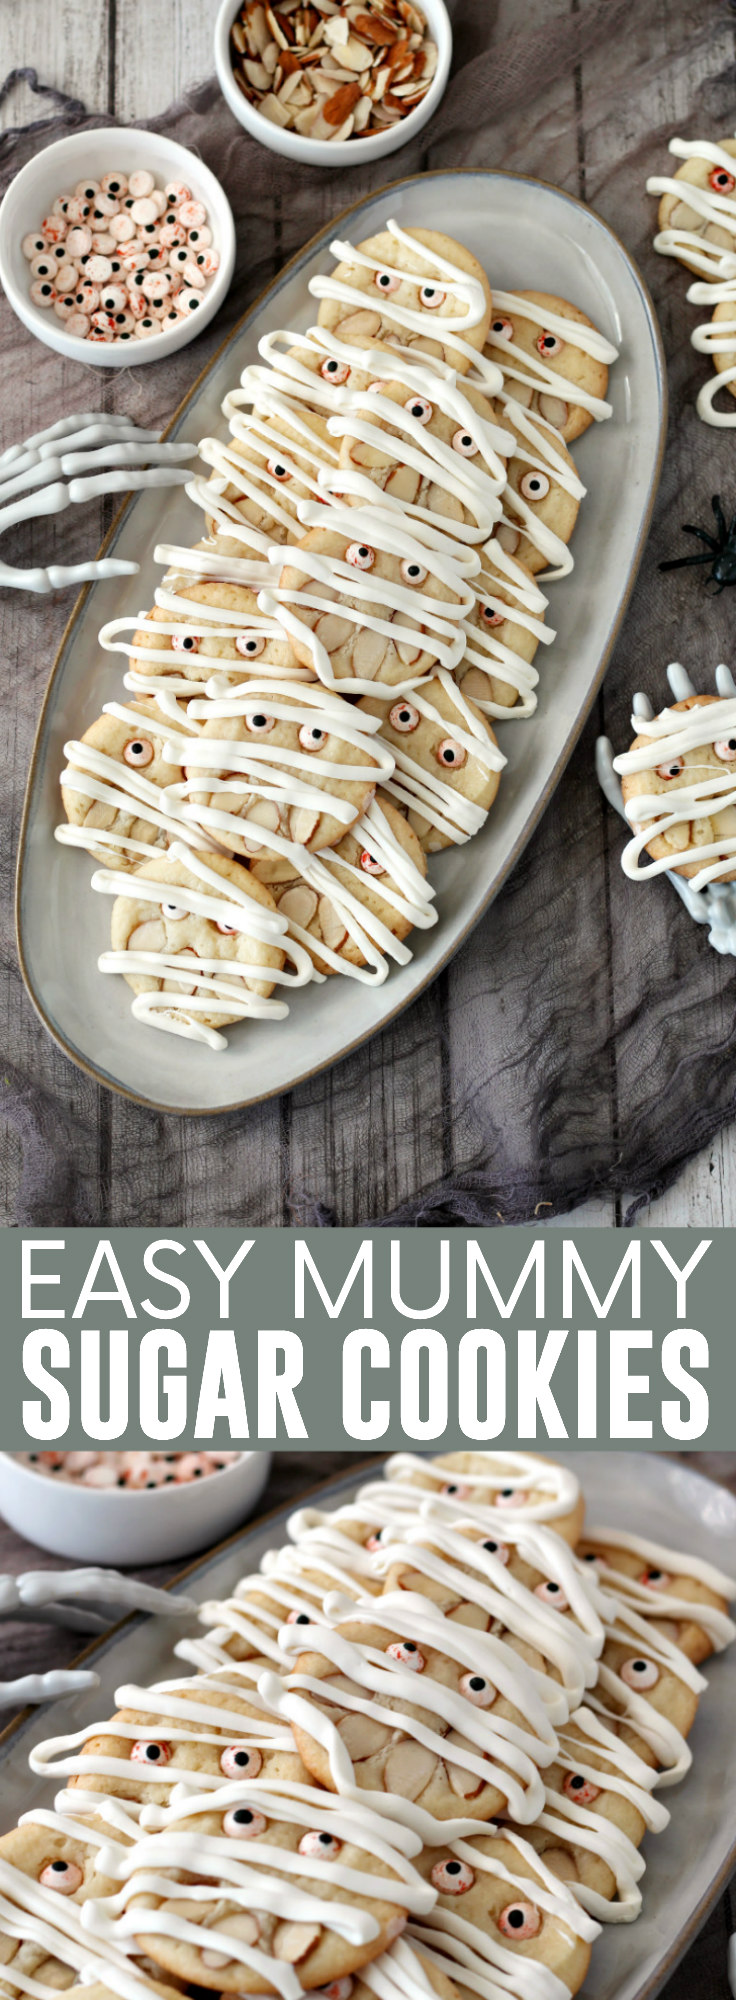 Easy Mummy Sugar Cookies pinnable image.